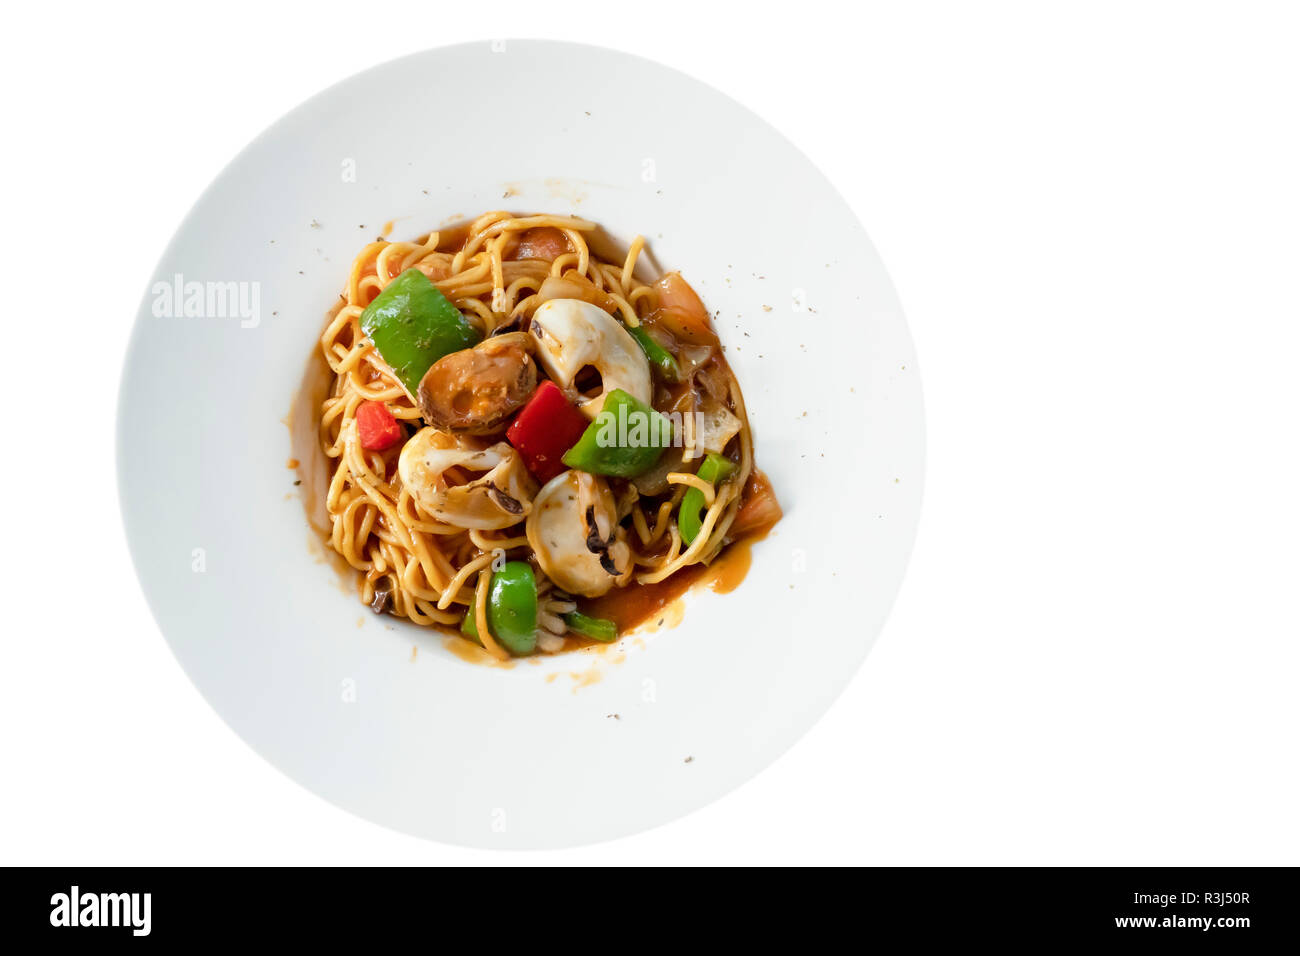 Spicy spaghetti aux fruits de mer sur plaque blanche Banque D'Images